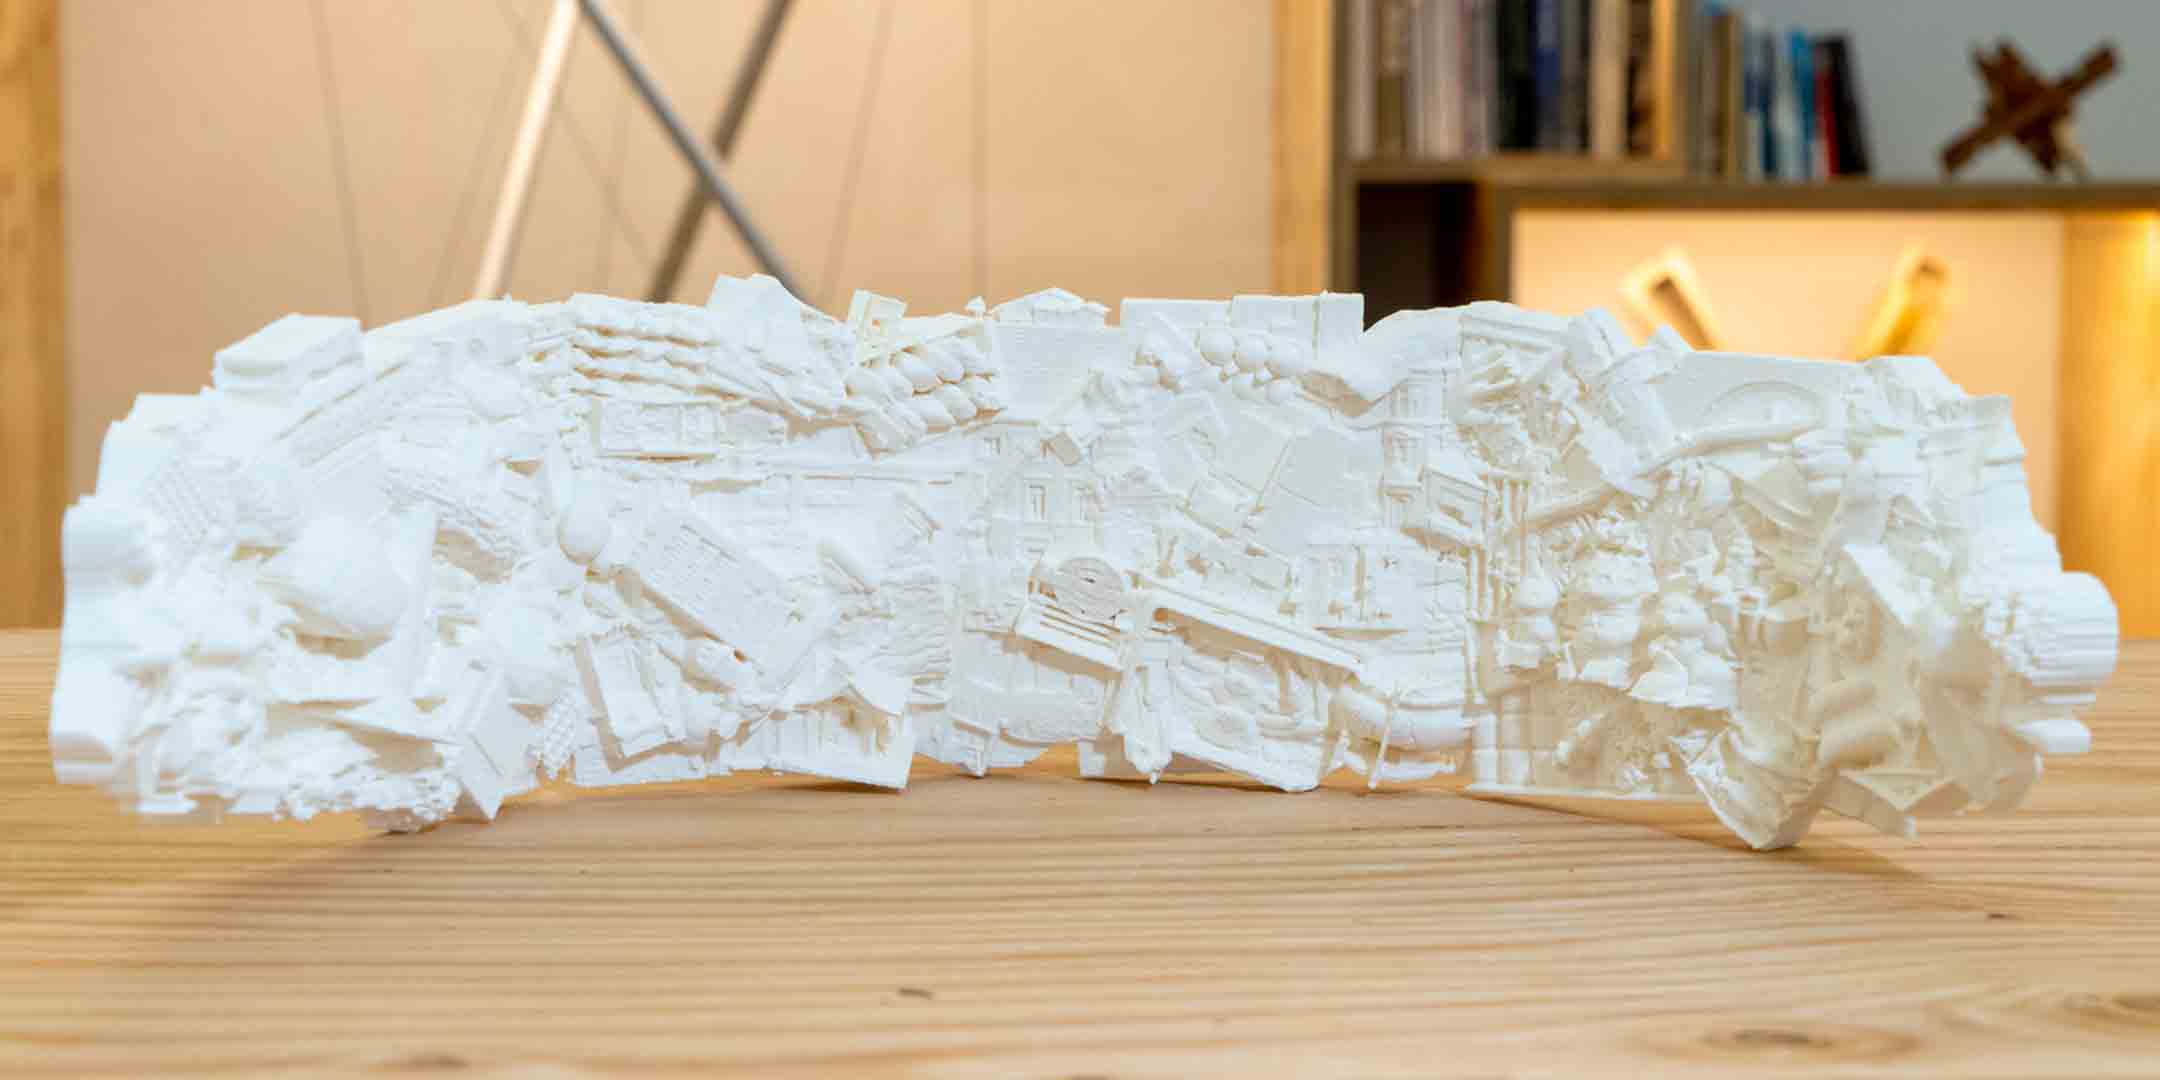 3D printed model